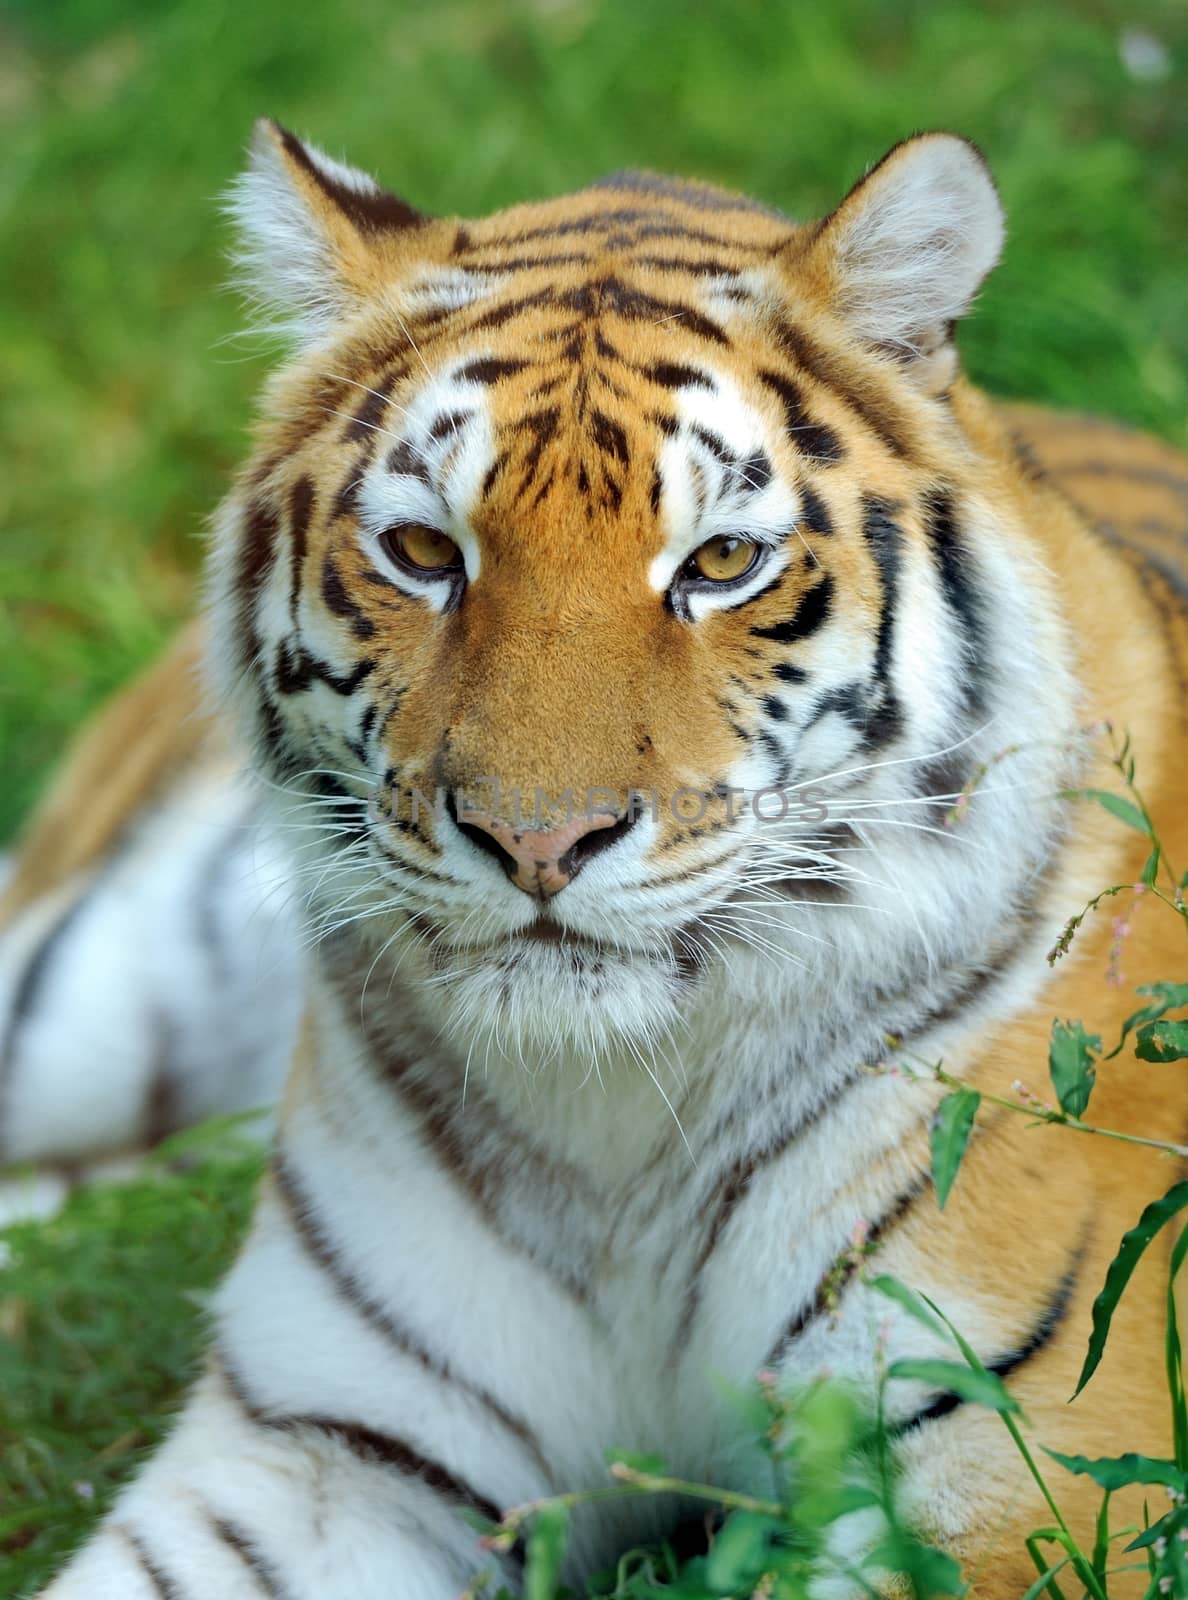 Tiger by byrdyak